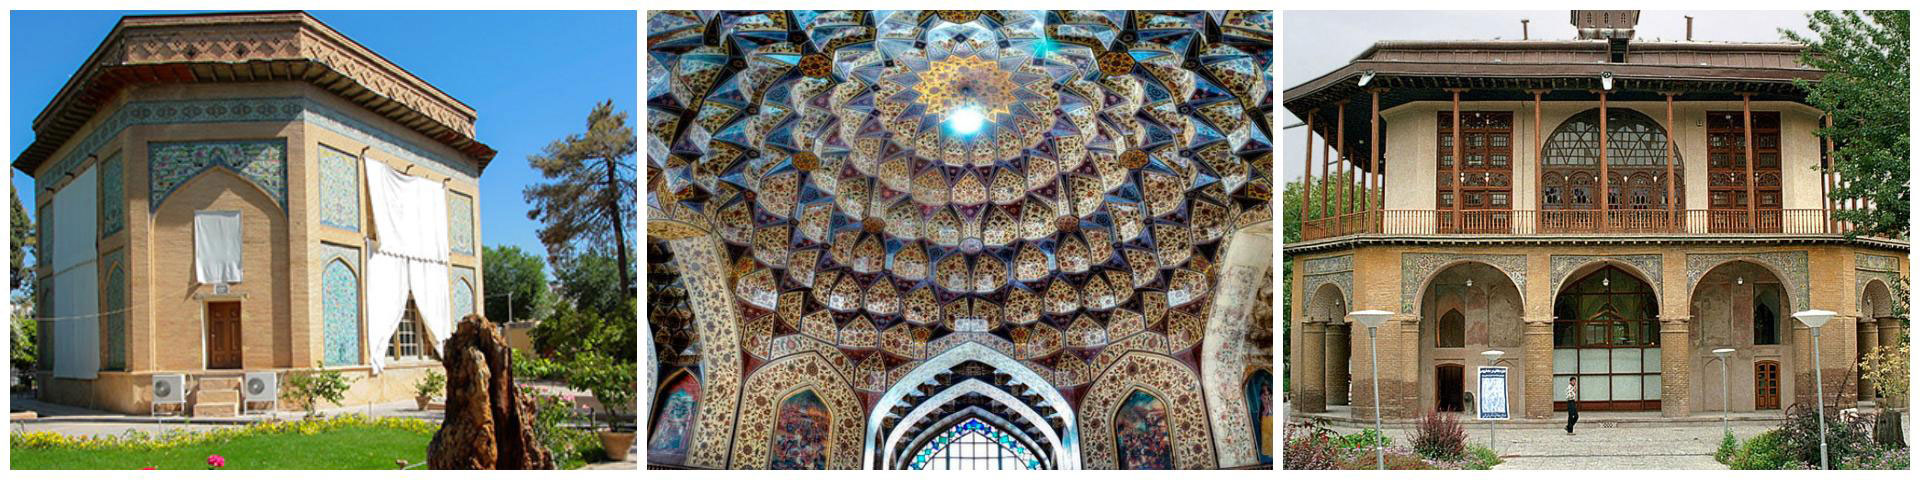 عکس عمارت کلاه فرنگی شیراز